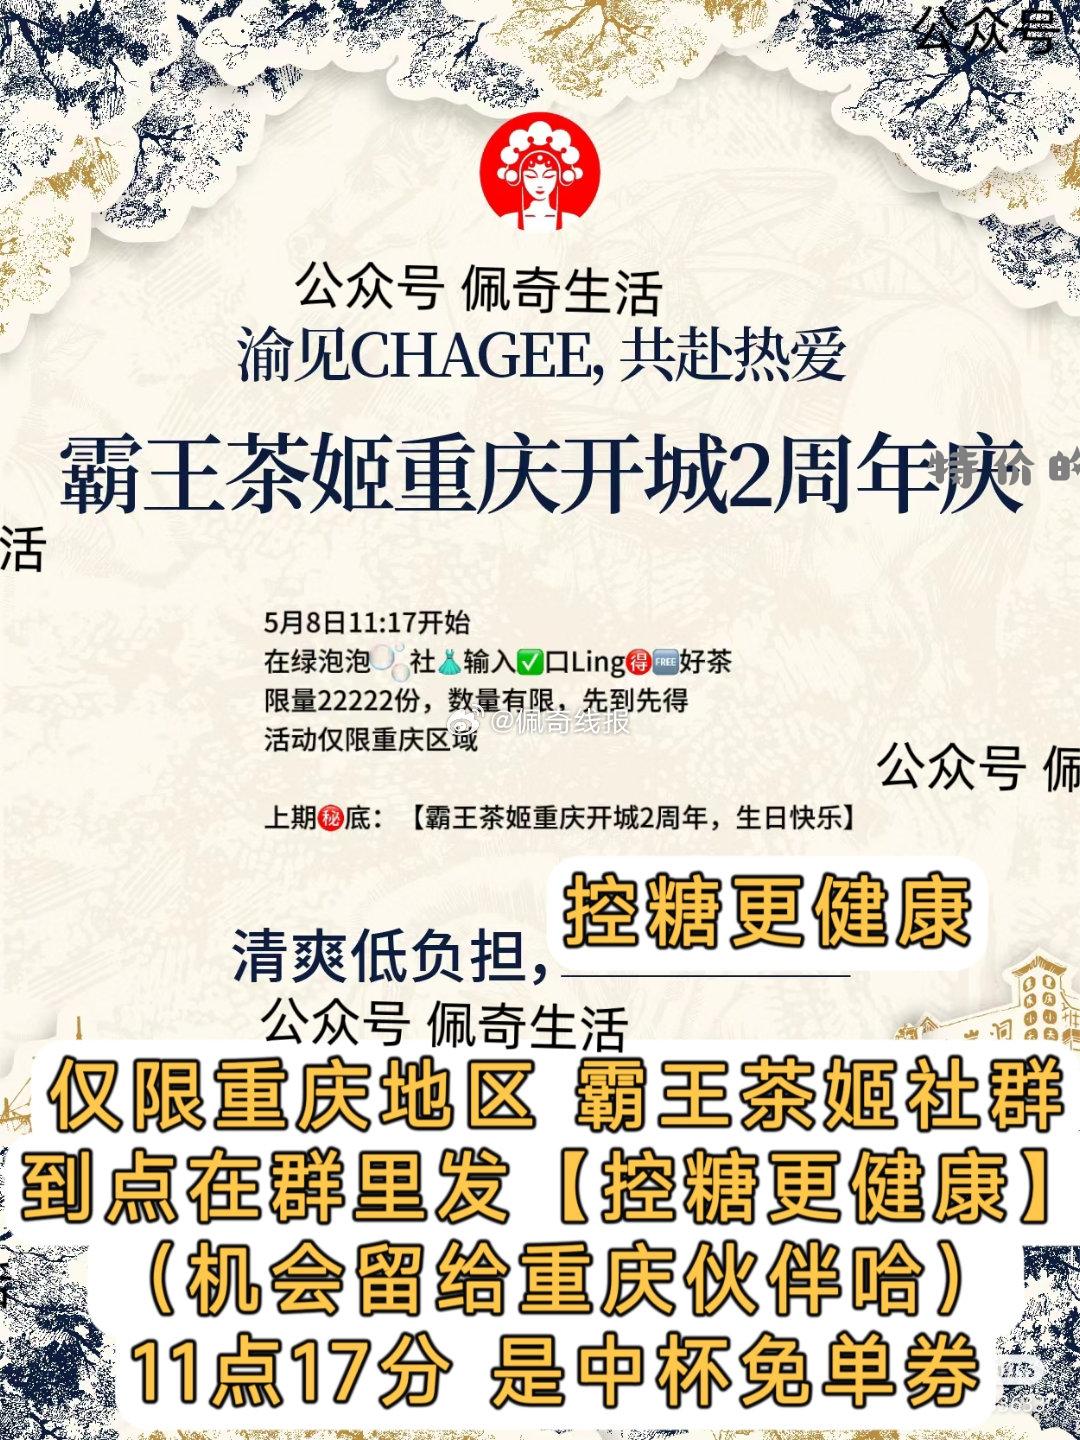 重庆地区 霸王茶姬 11点17 有中杯免单券 需要提前进入社群 准点参与回复 - 特价的